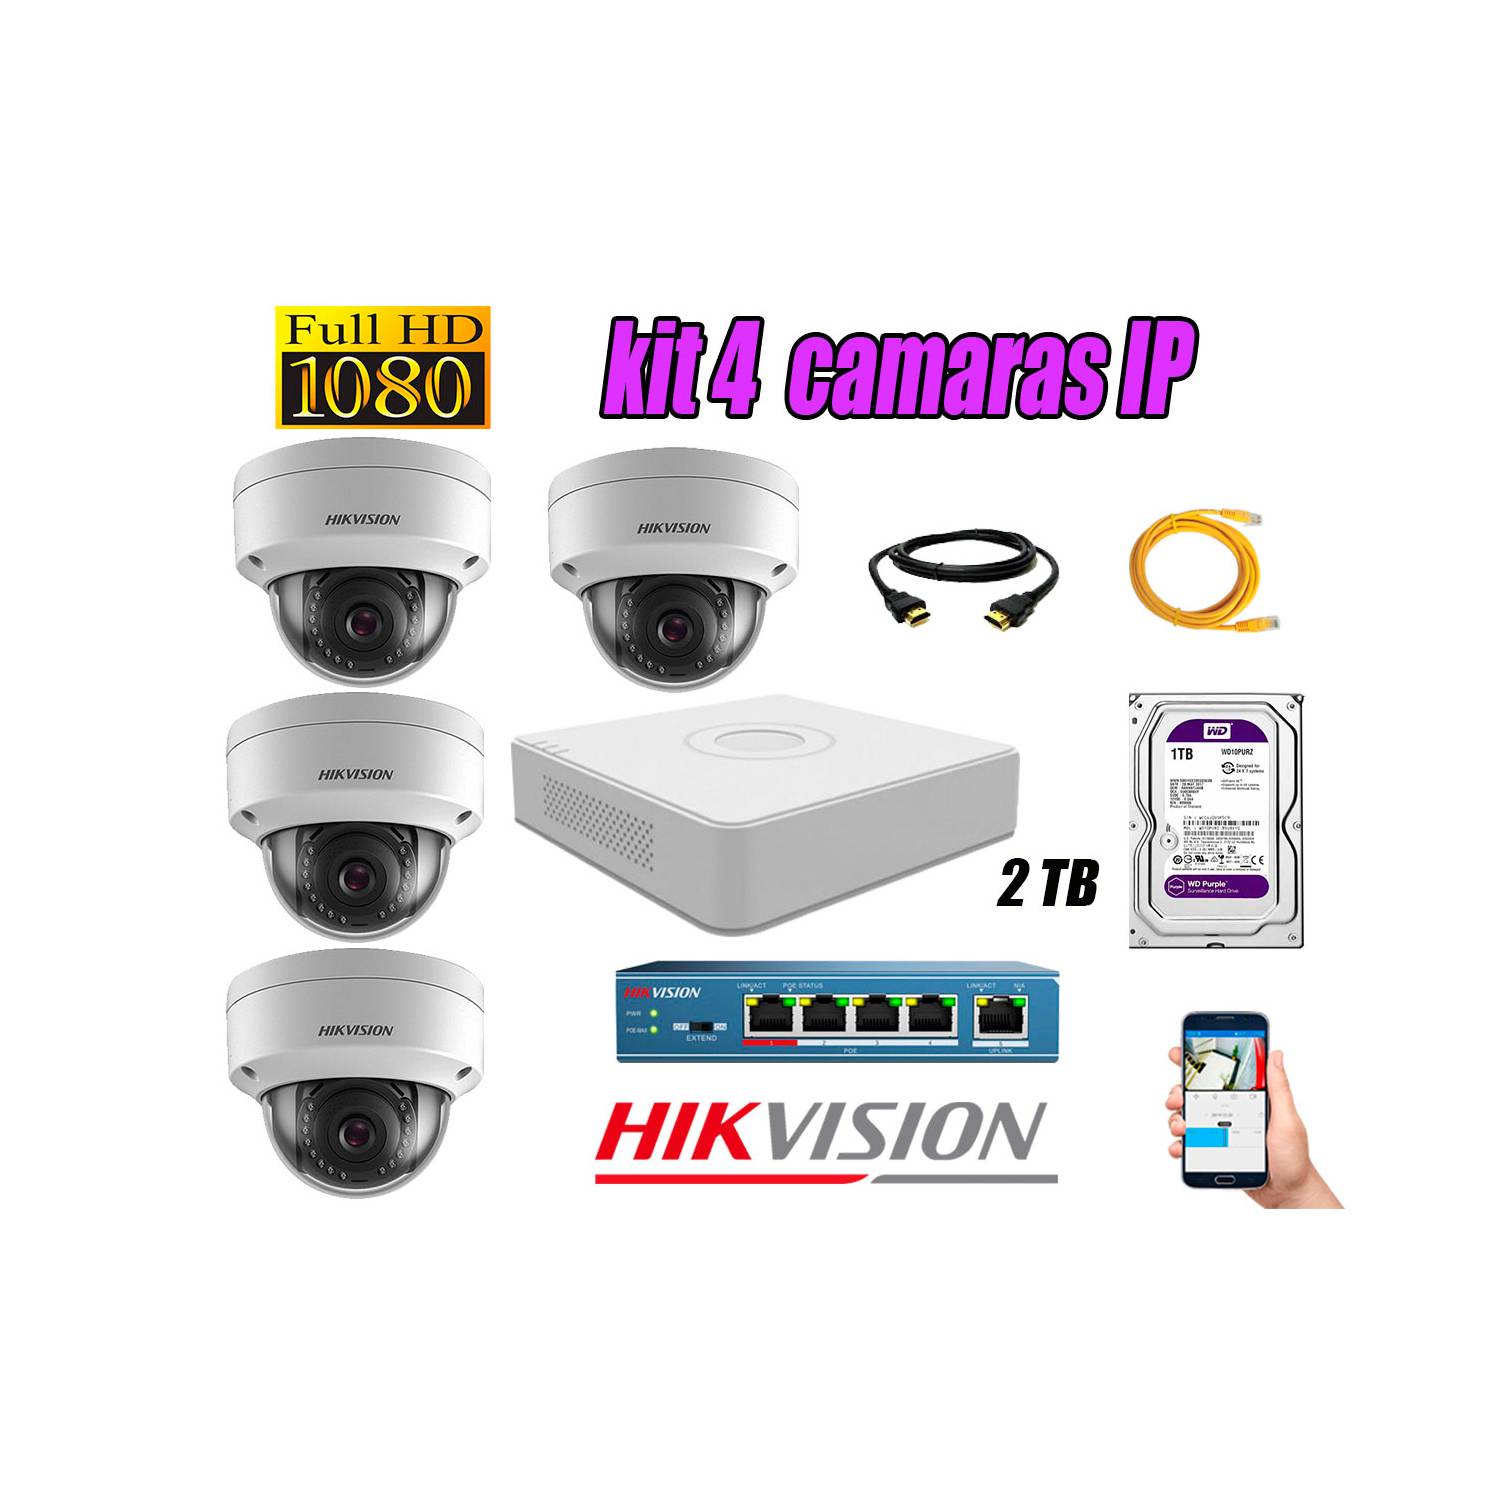 KIT DE VIDEO VIGILANCIA IP CCTV HIKVISION DE 4 CAMARAS FULL HD 1080P DE 2MP